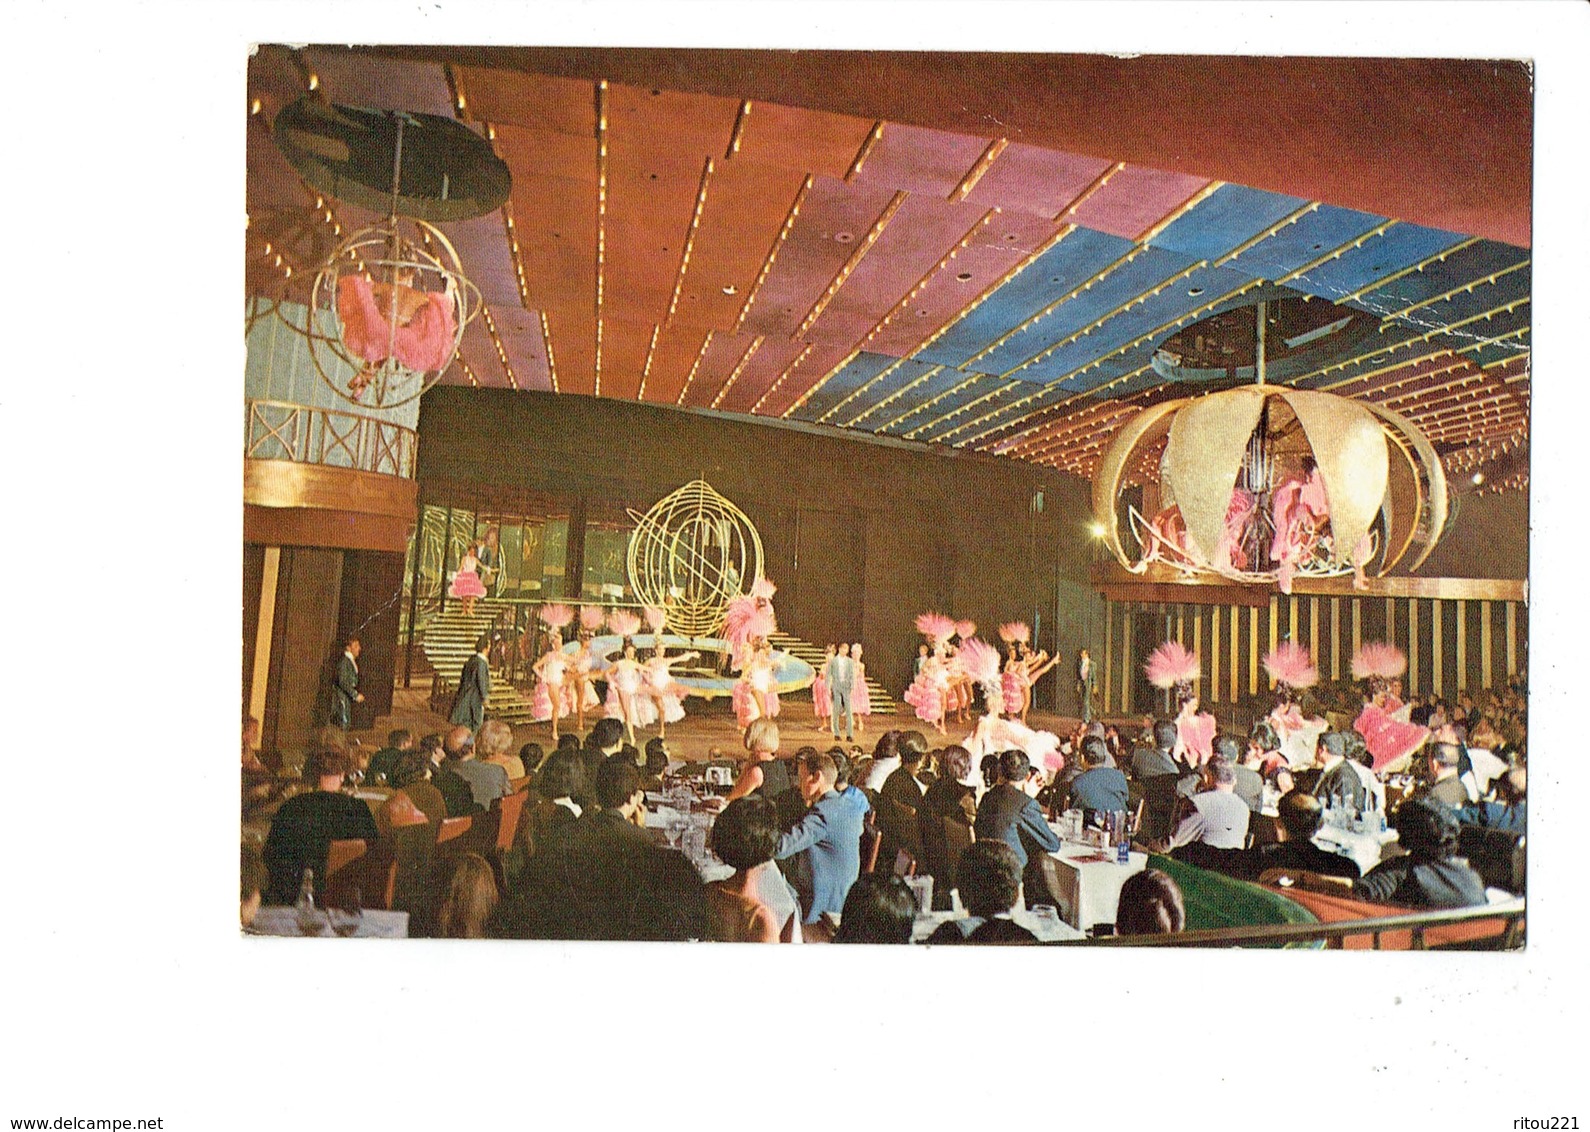 Cpm - Casino Du LIBAN - Salle Spectacle Danseuses Lustre - 1977 - Animation Sphère - Libanon